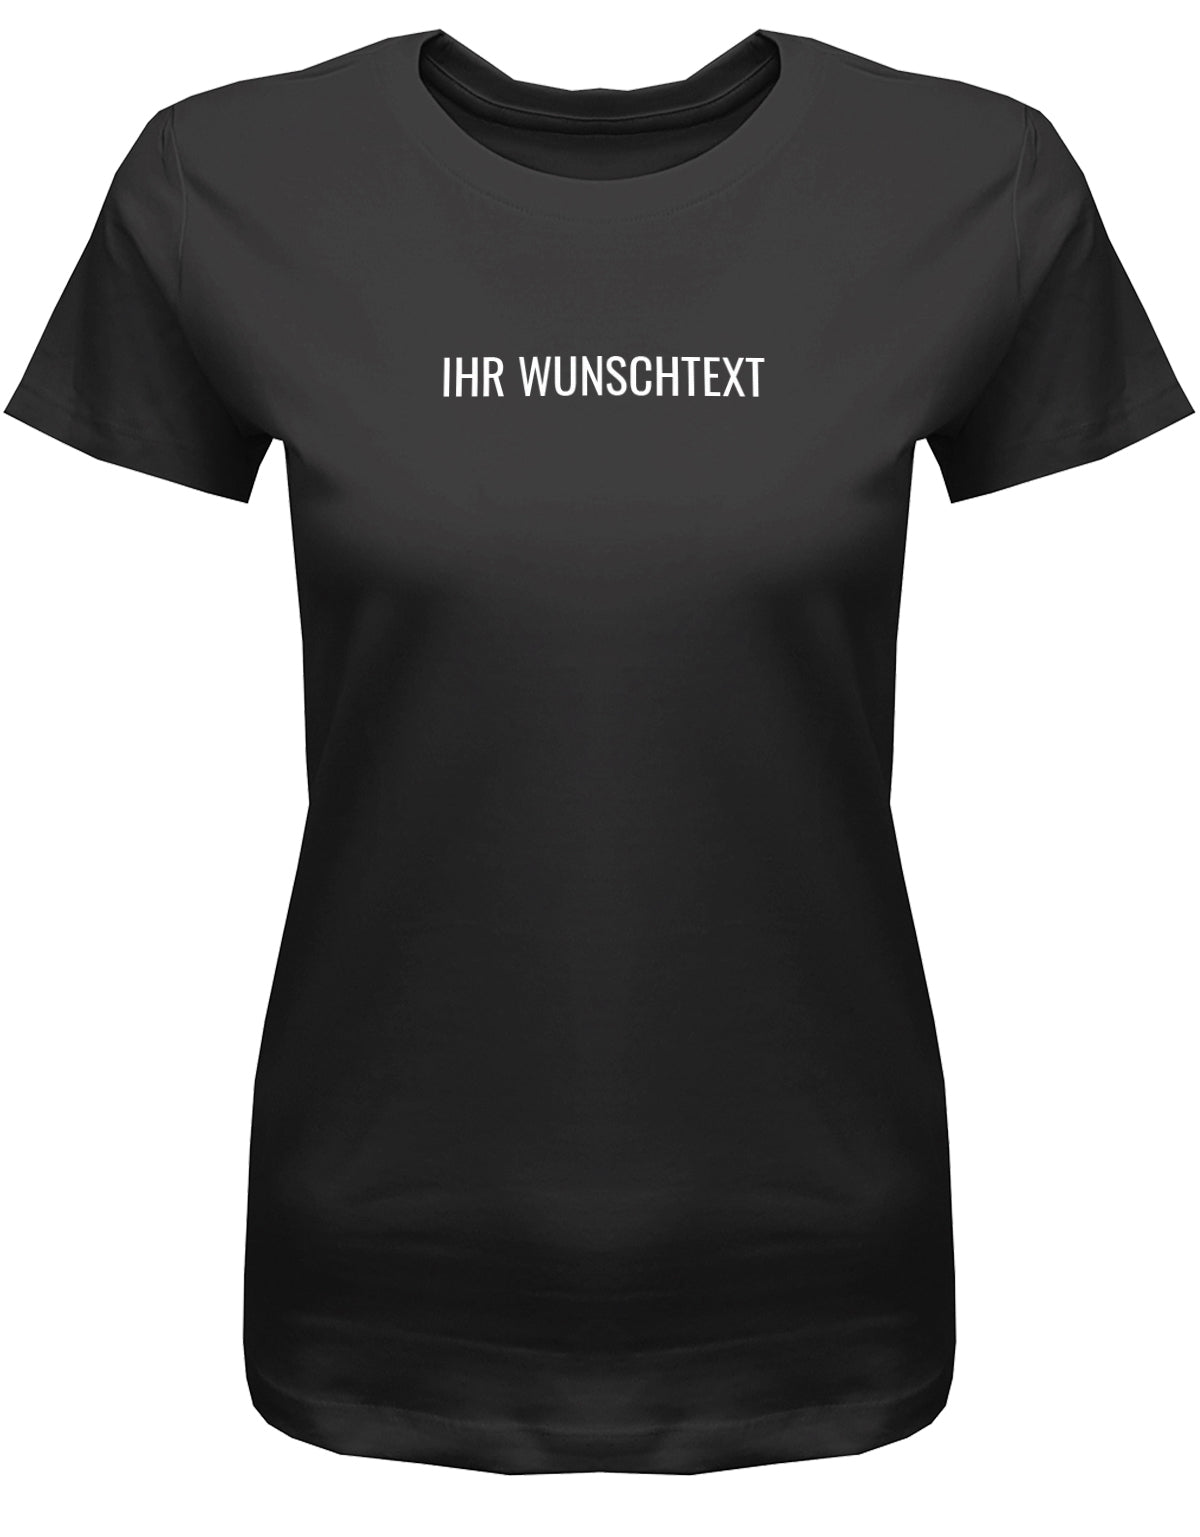 Frauen Tshirt mit Wunschtext. Minimalistisches Design. Schwarz